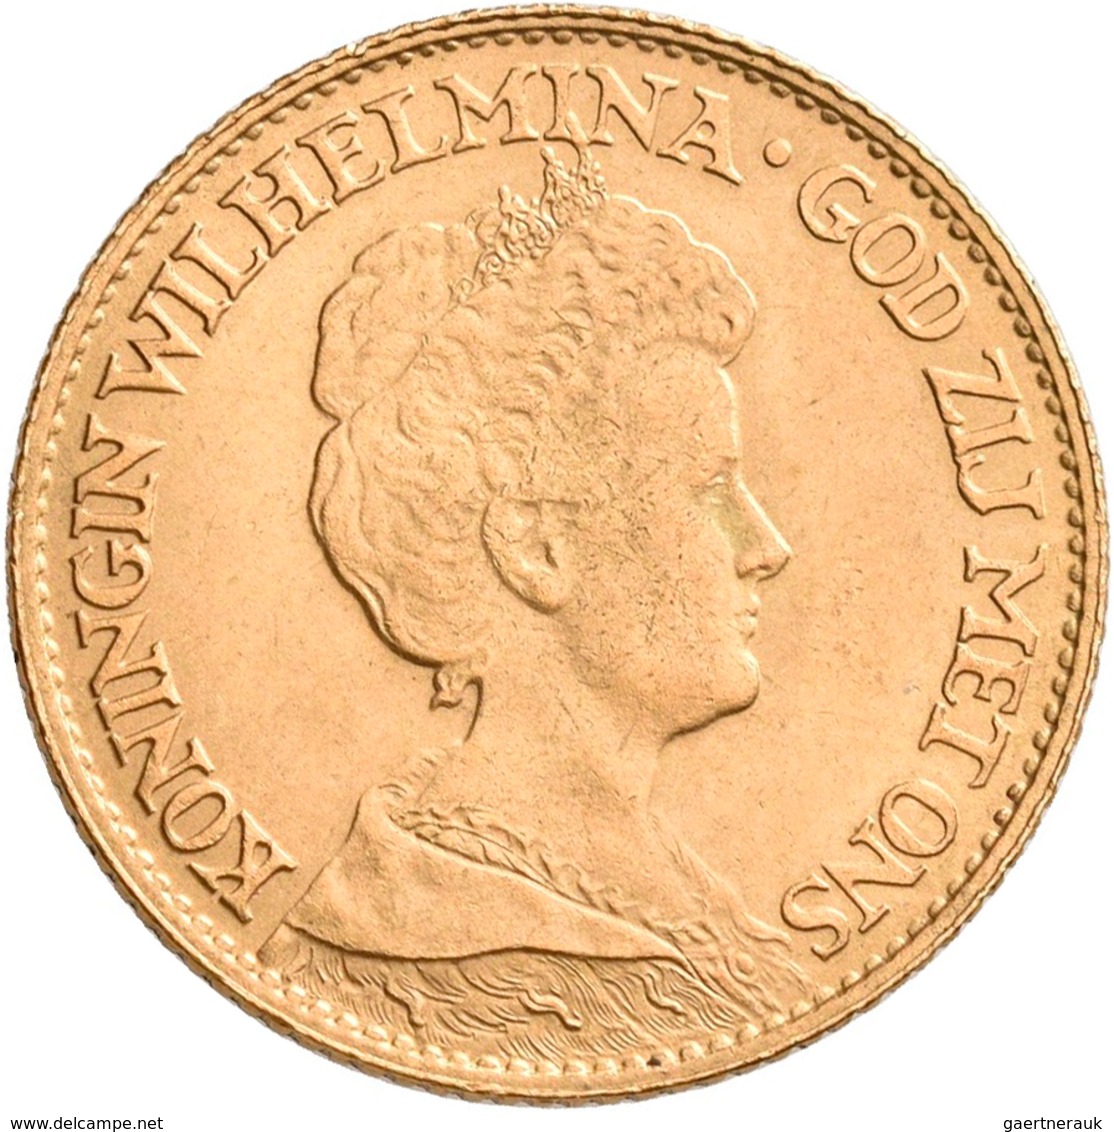 Niederlande - Anlagegold: Lot 4 Goldmünzen: 10 Gulden 1876 (2x), 1917 Und 1932. Jede Münze Wiegt 6,7 - Monnaies D'or Et D'argent